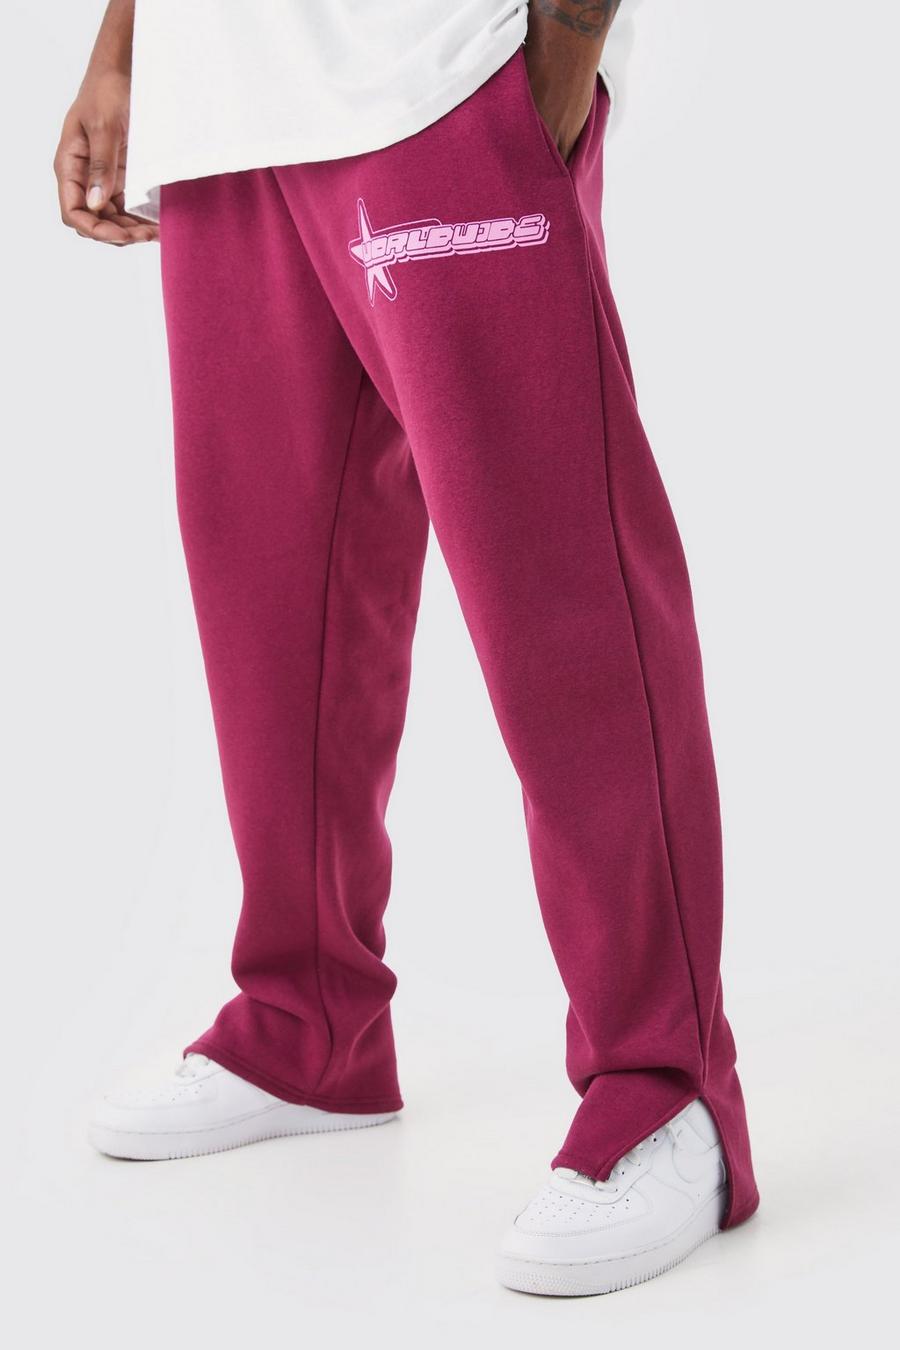 Pantaloni tuta Plus Size Worldwide con stampa di stelle e spacco sul fondo, Berry rojo